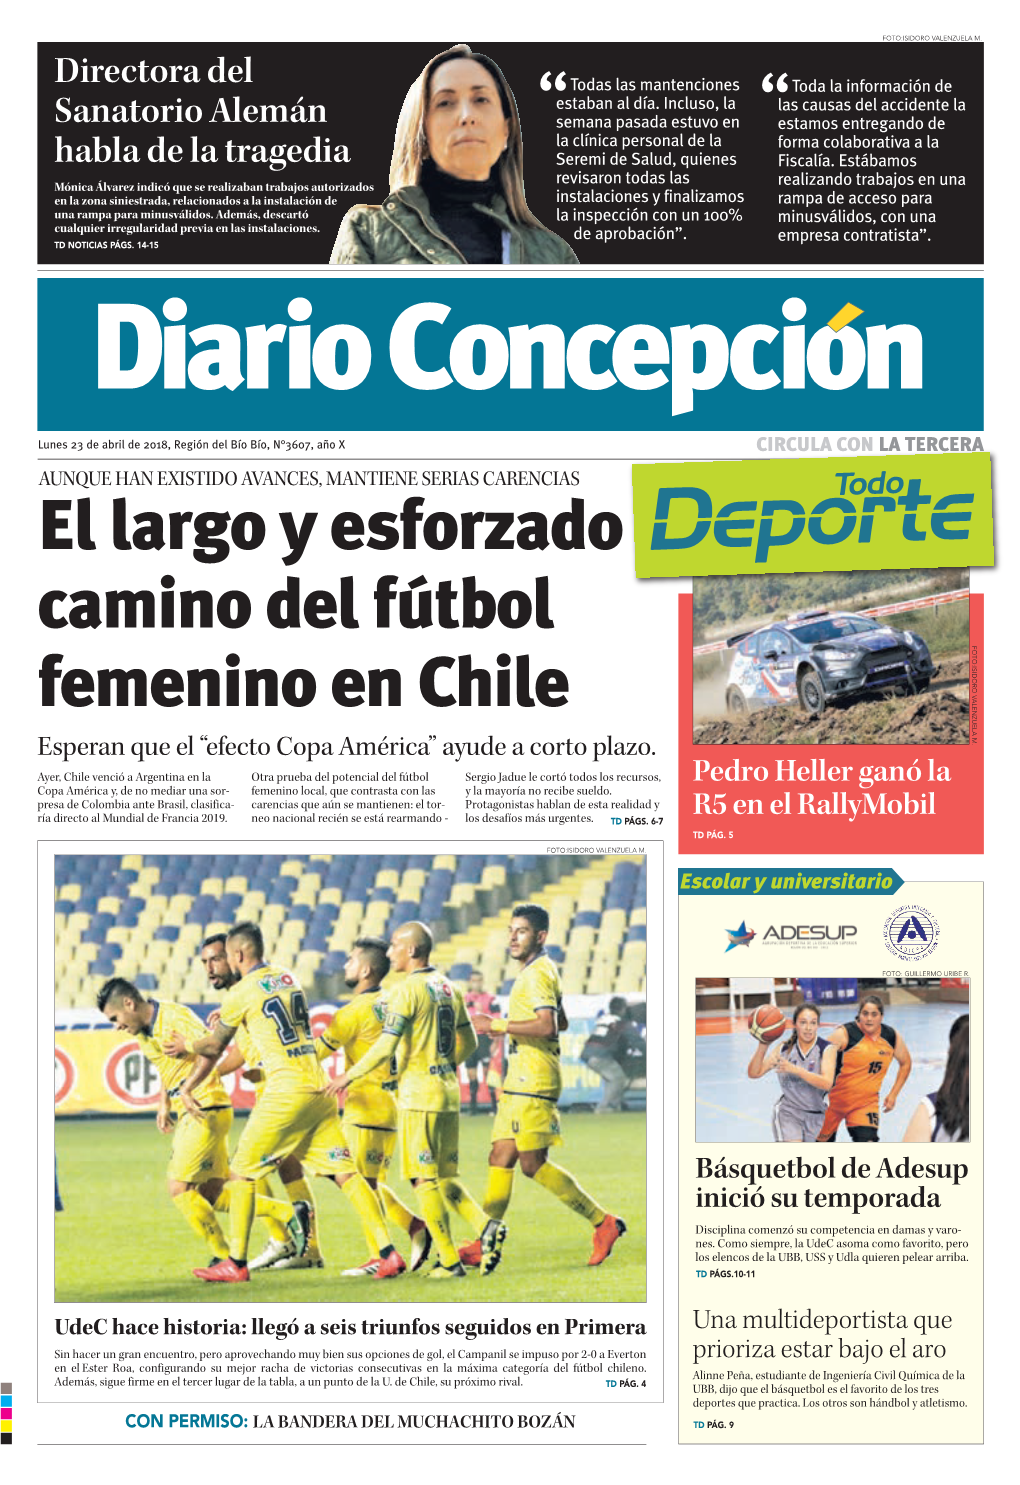 El Largo Y Esforzado Camino Del Fútbol Femenino En Chile